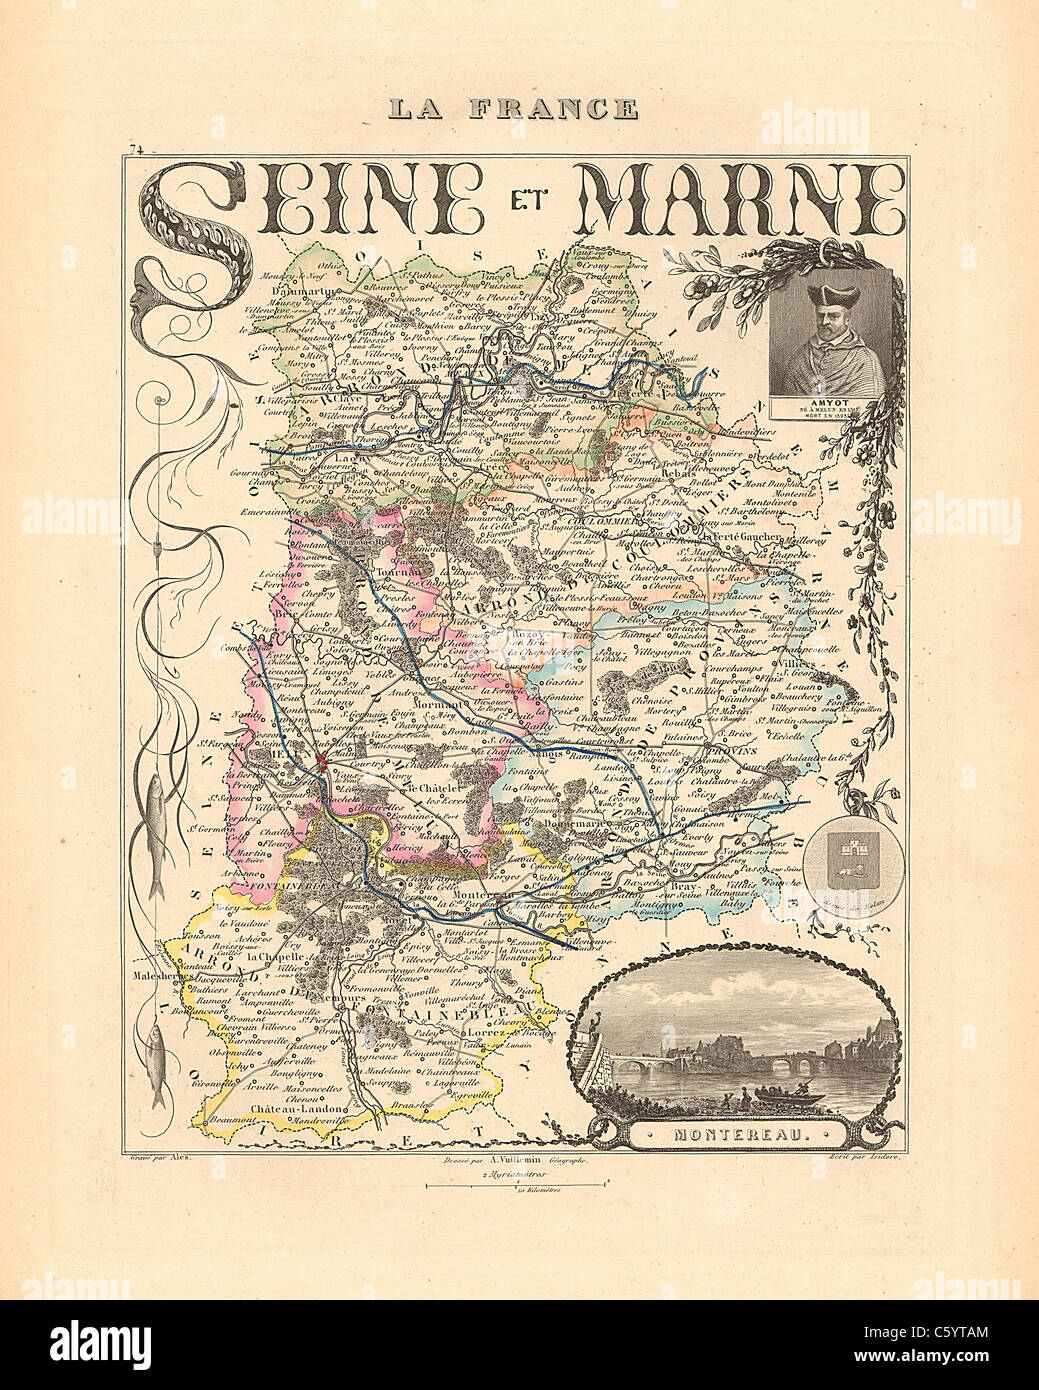 Seine et Marne - Antiquarian Site à partir d'un Atlas Français 1858 "La France et ses colonies" (La France et ses colonies ) par Alexandre Vuillemin Banque D'Images